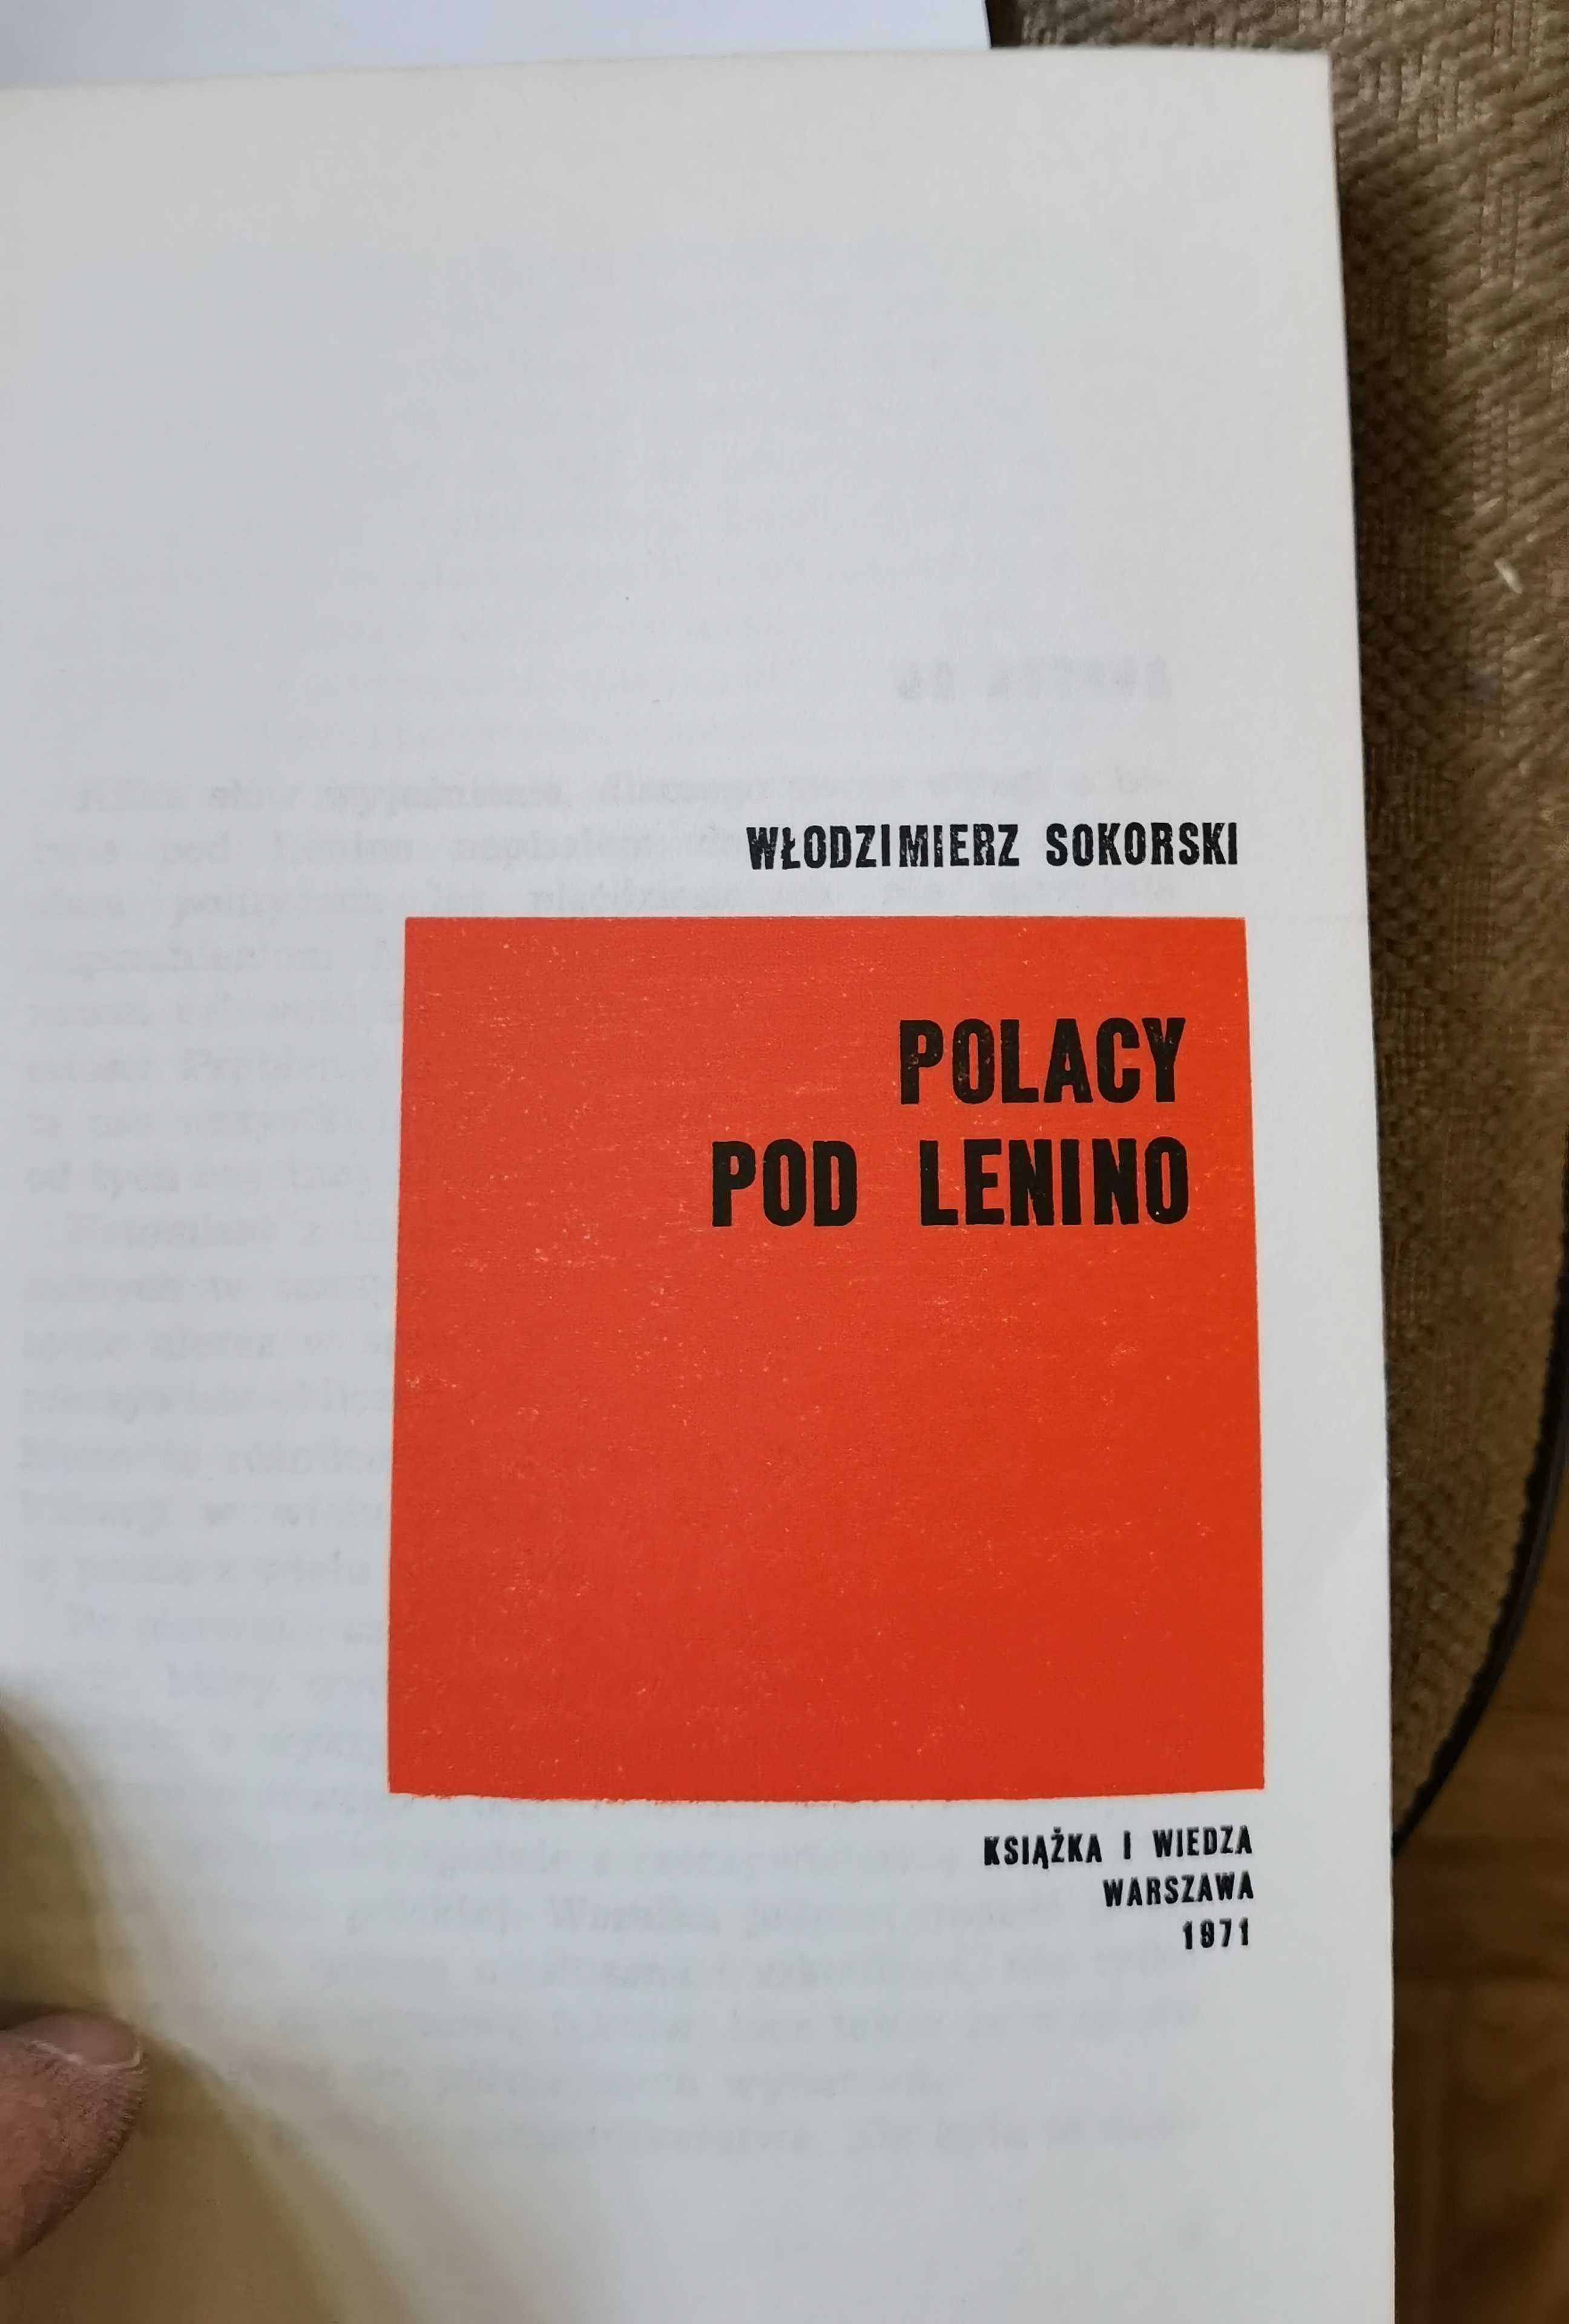 Włodzimierz Sokorski POLACY pod Lenino, Książka i Wiedza 1971